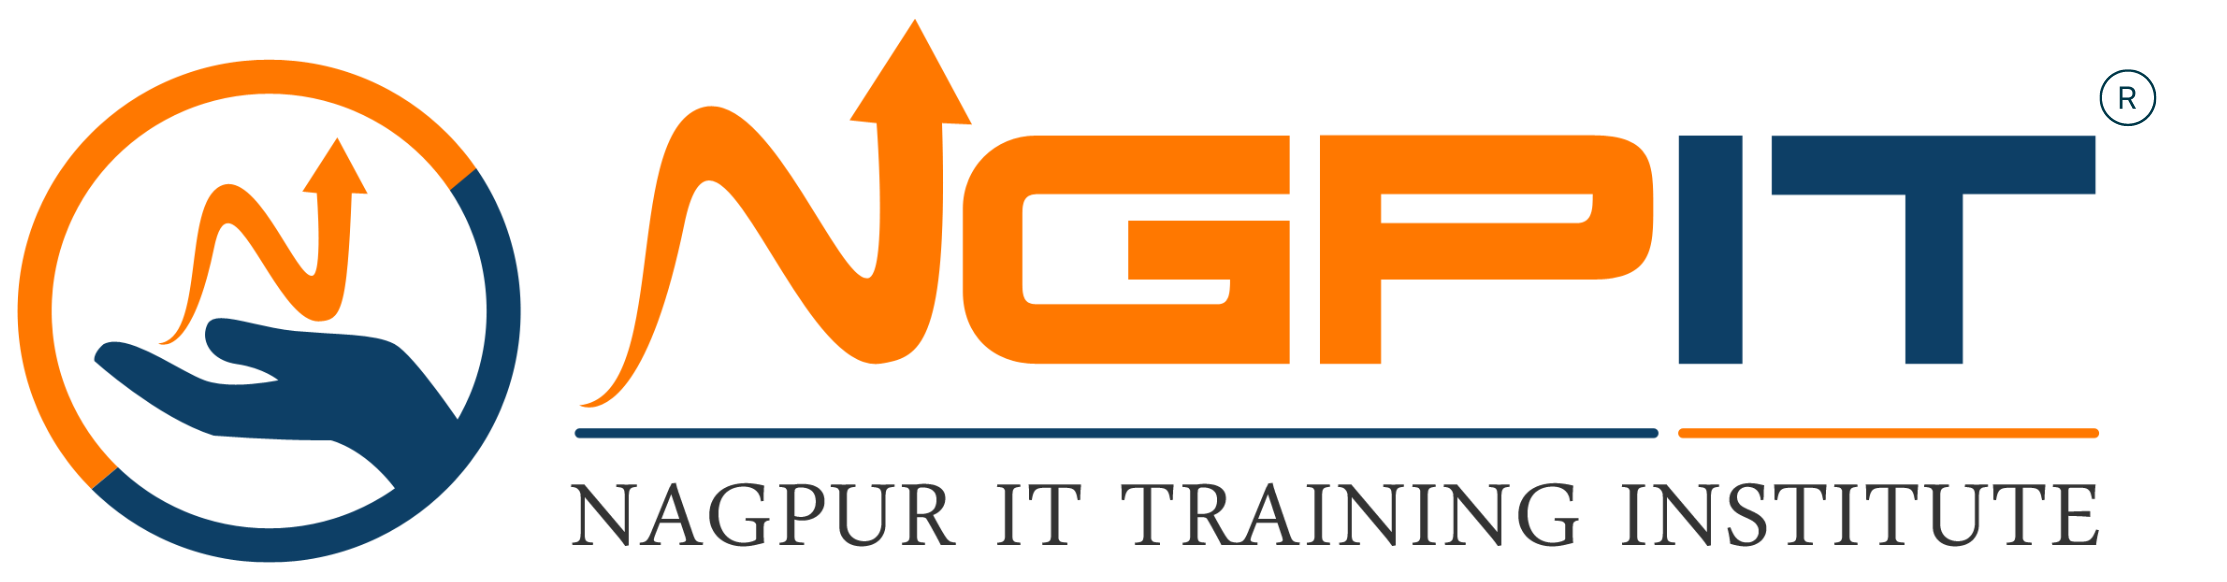 Nagpur IT Training Institute